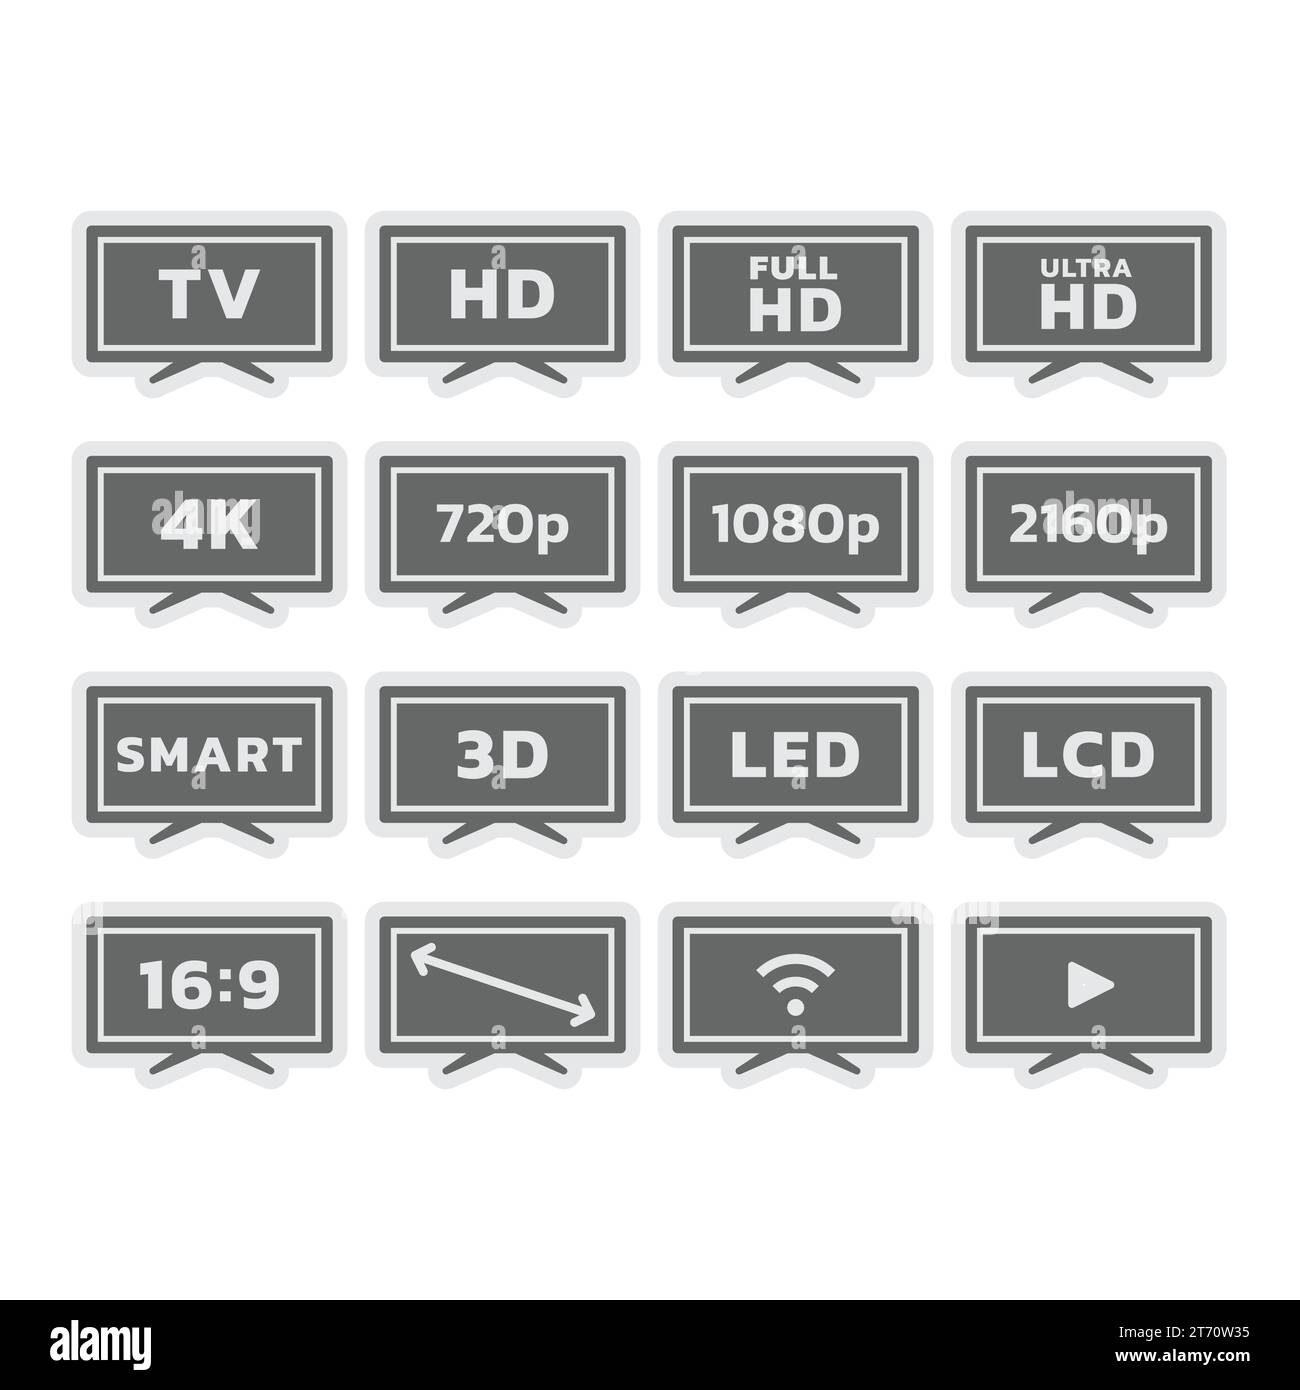 Fernseher, Bildschirmgröße und -Auflösung, Smart-TV-Symbole. Full und Ultra HD, LED-Anzeige, Ratio Vektor-Symbolsatz. Stock Vektor